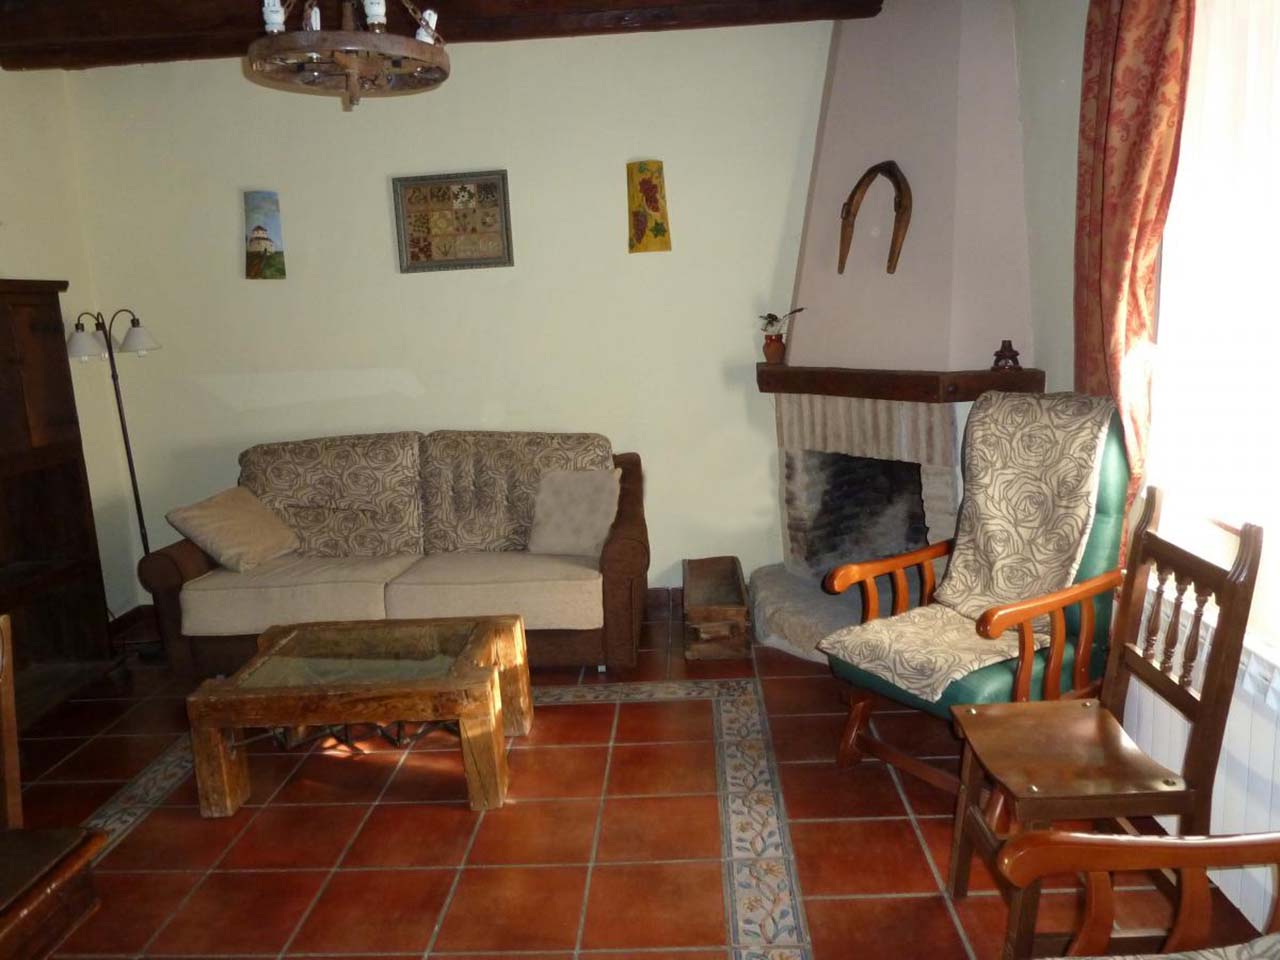 Casa Federico, casa rural en el Camino de Santiago, Villalcazar de Sirga, Palencia